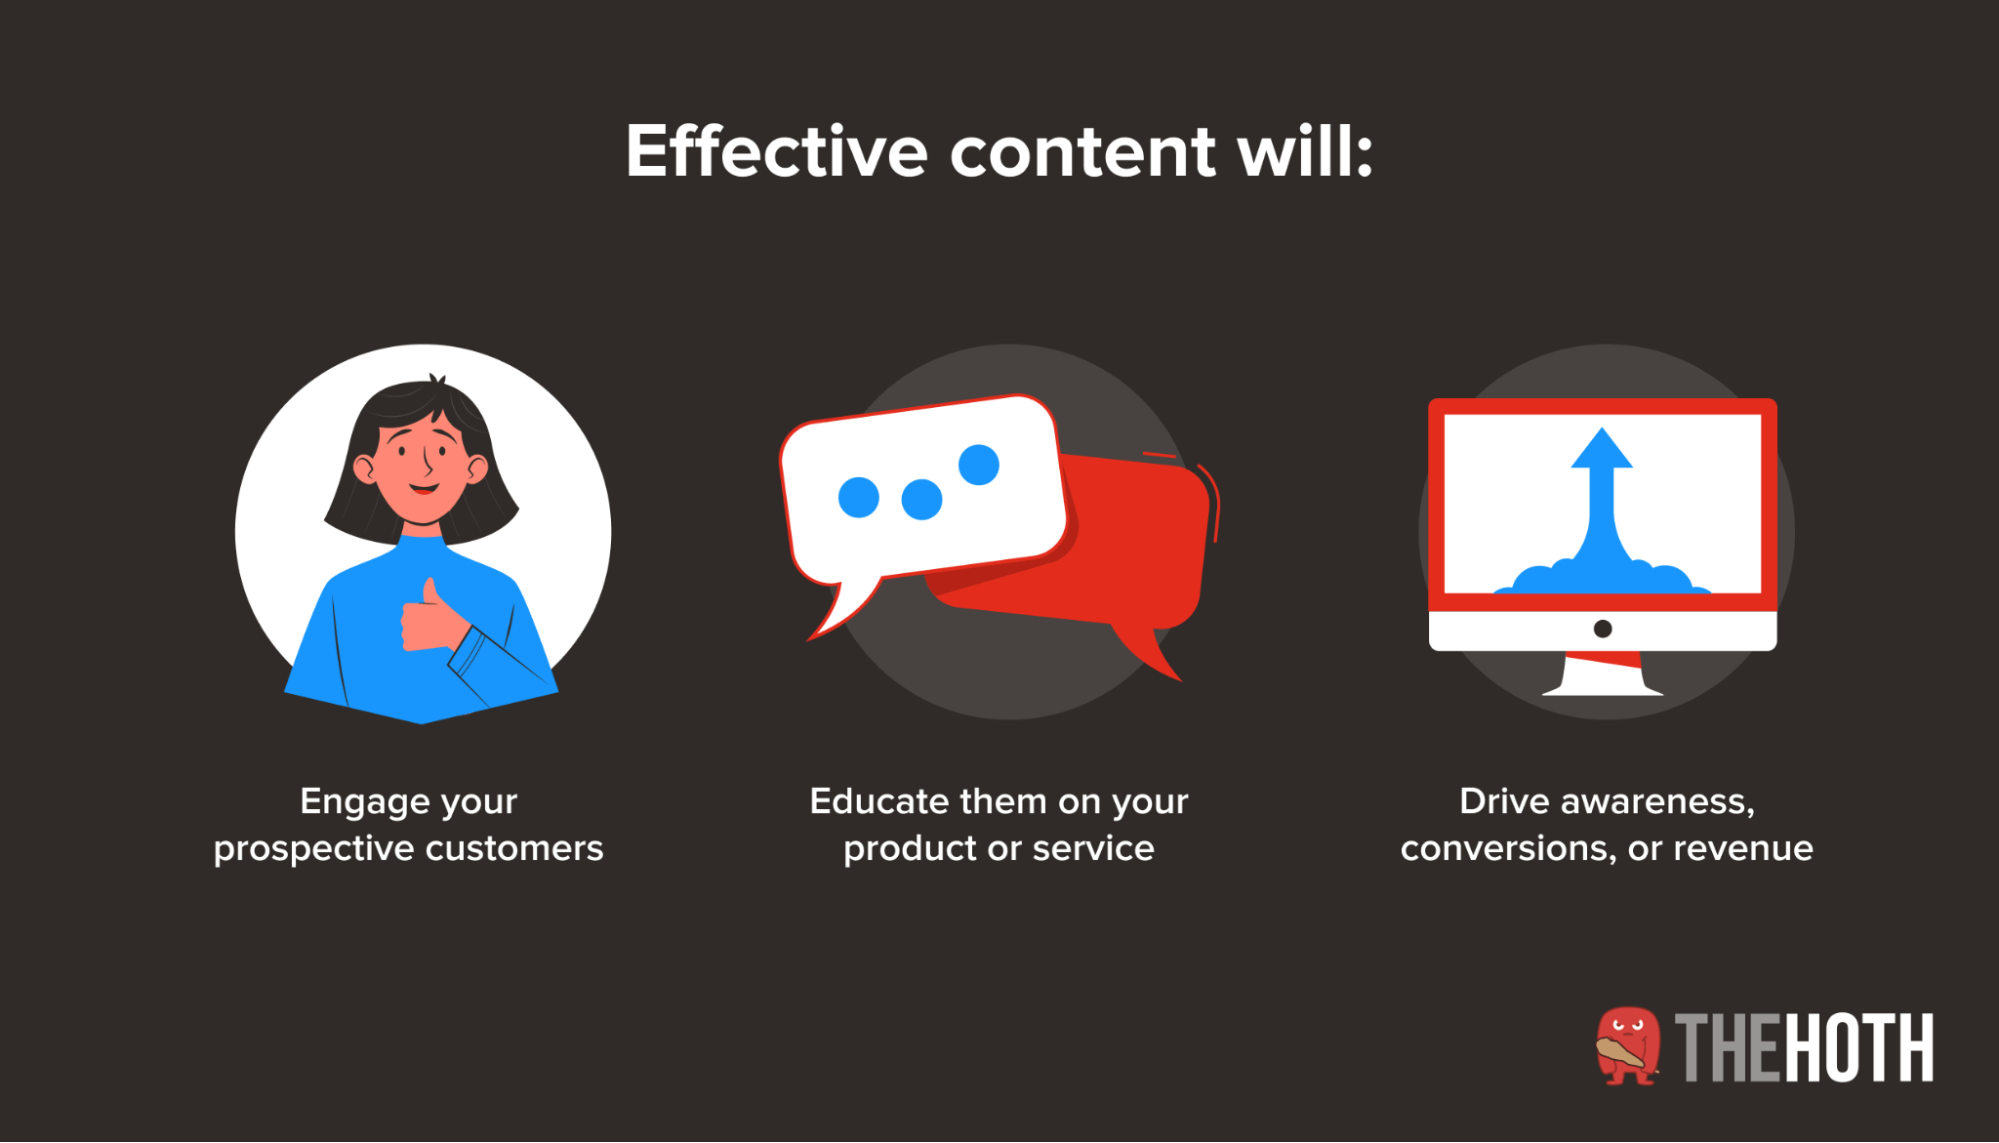 Goals of Effective Content